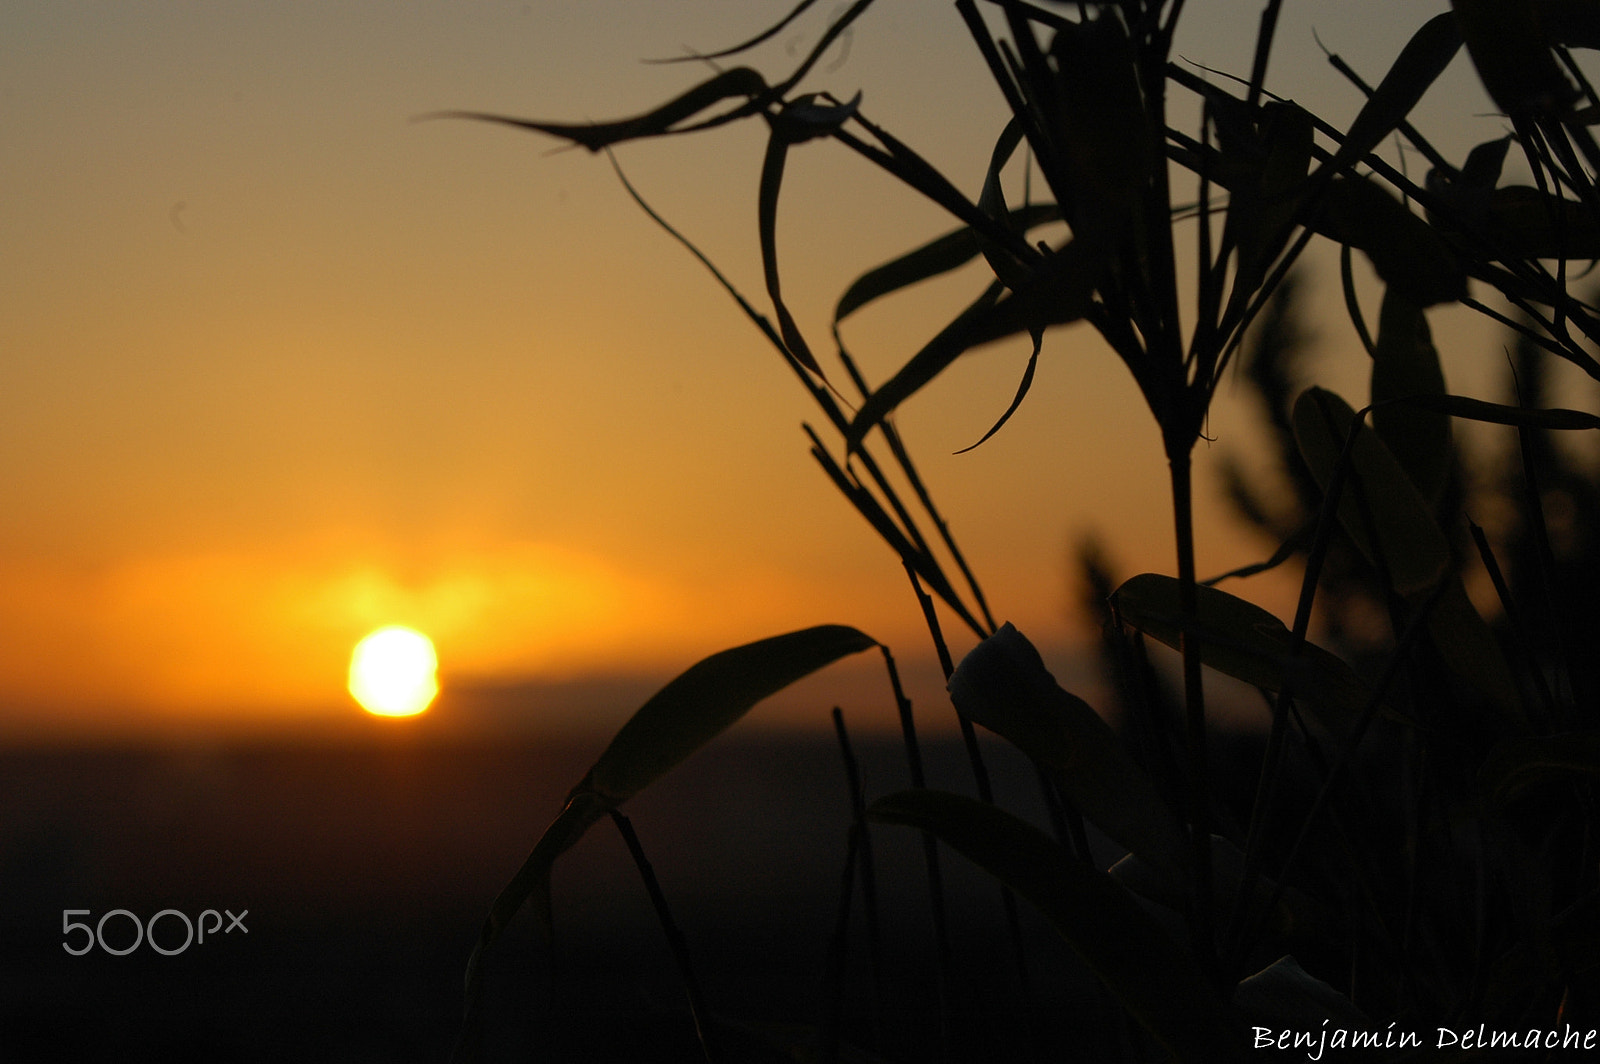 Nikon D70 + AF Zoom-Nikkor 35-80mm f/4-5.6D sample photo. Sunset over rouen photography